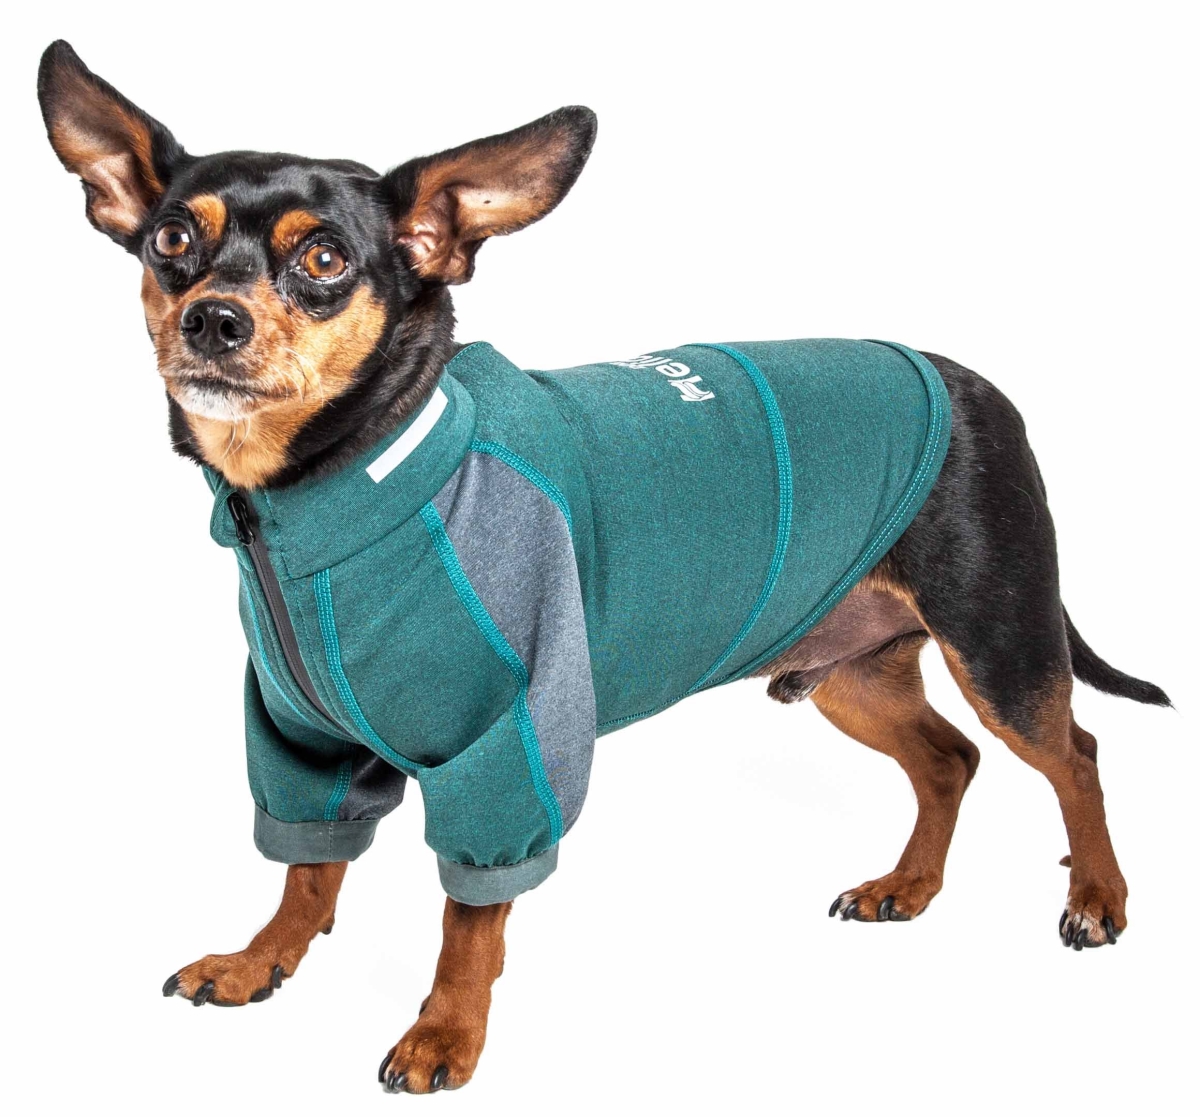 Tshl6gnxl Eboneflow Mediumweight 4-way-stretch Flexible & Breathable Performance Dog Yoga T-shirt, Forest Green & Grey - Extra Large